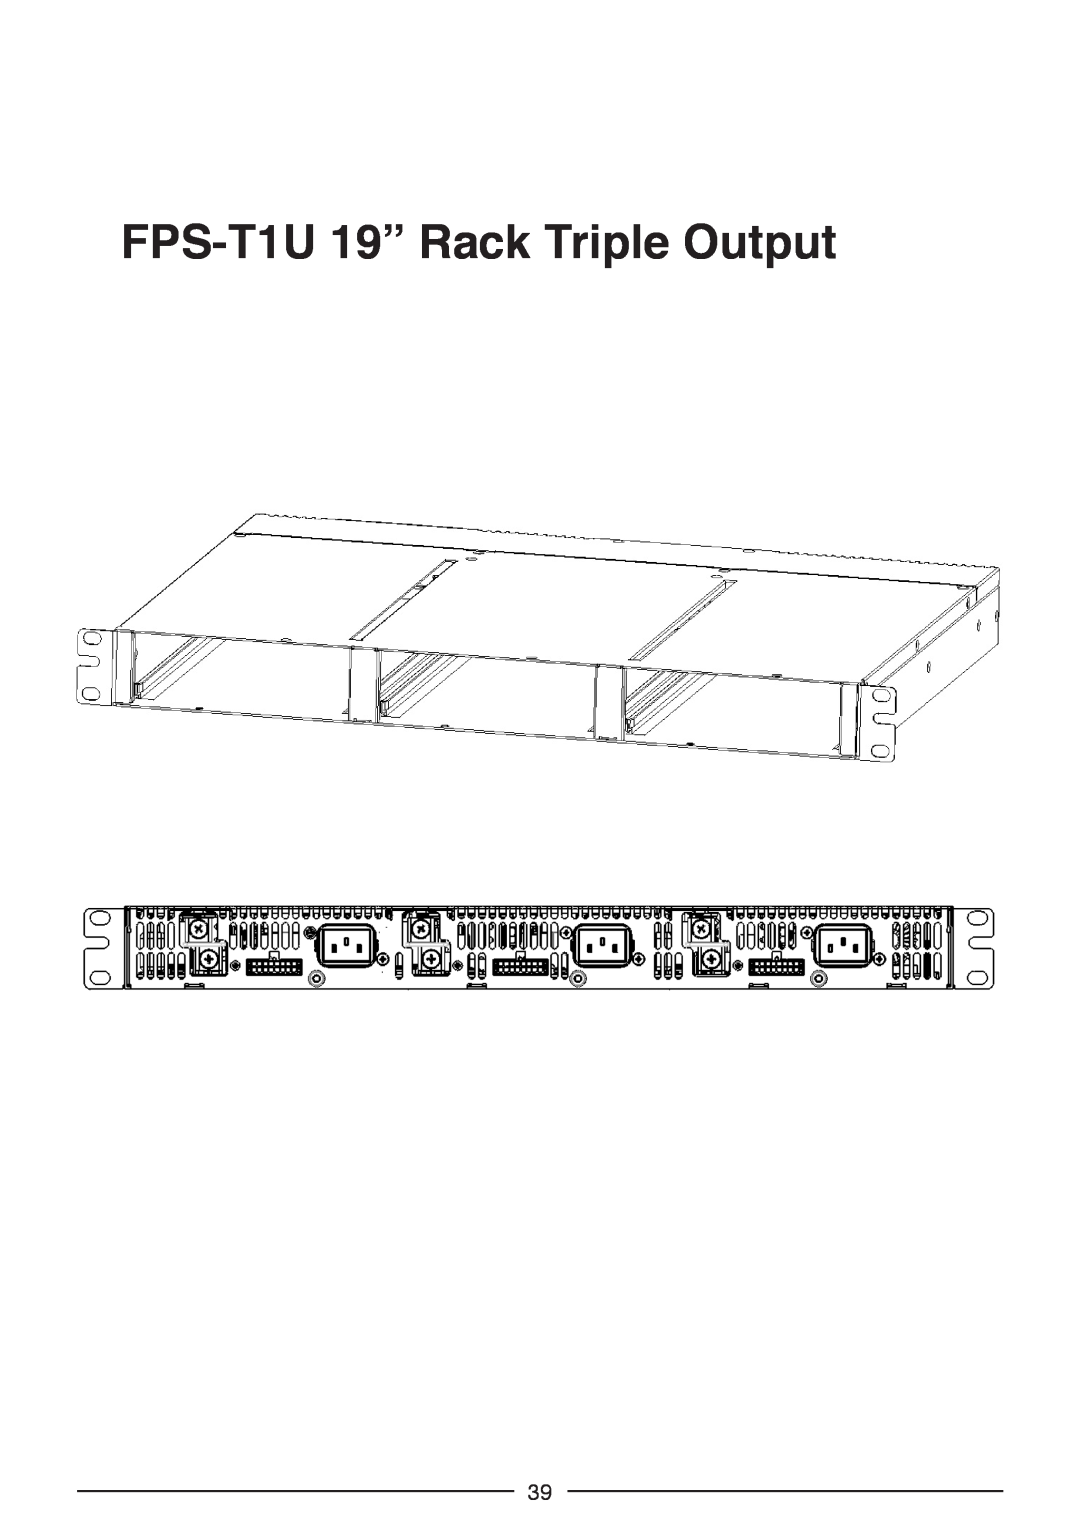 TOA Electronics FPS1000-24, FPS1000-12, FPS1000-32, FPS-S1U, FPS1000-48 instruction manual FPS-T1U 19” Rack Triple Output 